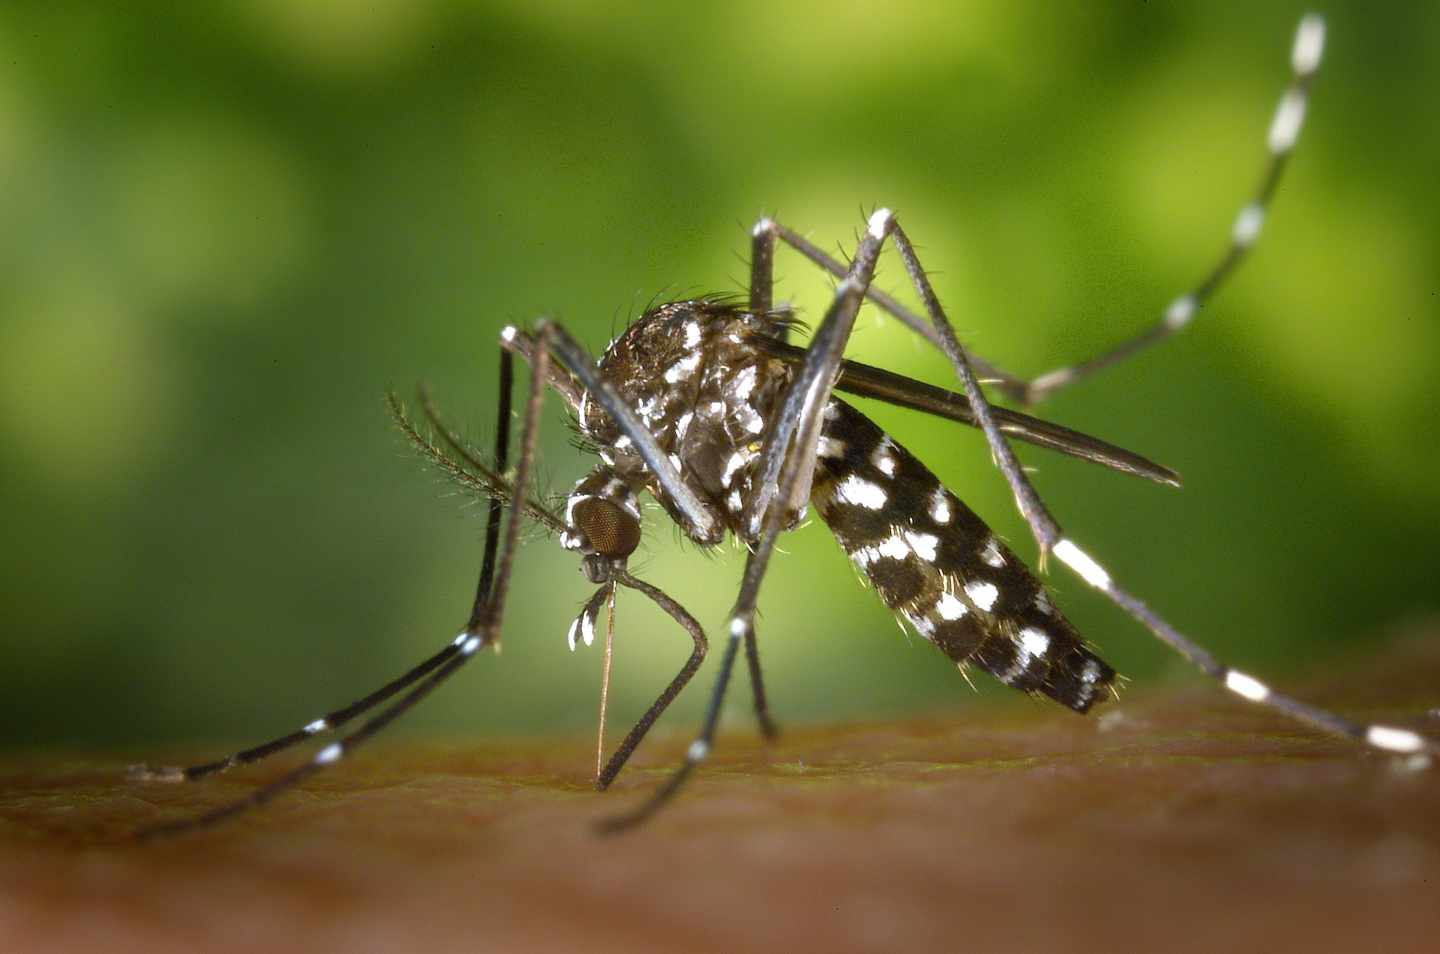 Detectado otro caso de dengue autóctono en Cataluña, el sexto en España